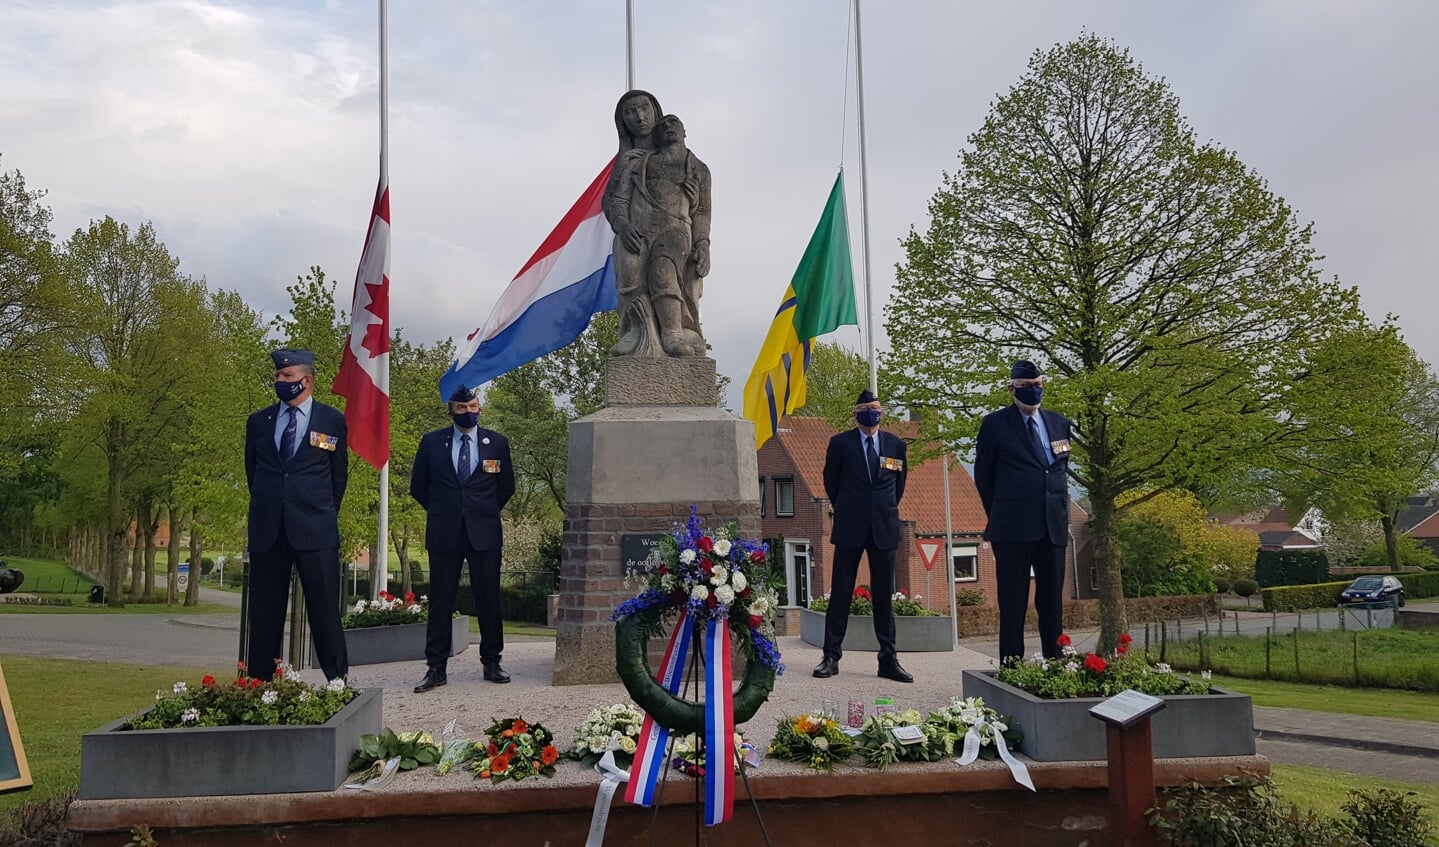 Herdenking bij het monument in Woensdrecht/Hoogerheide.